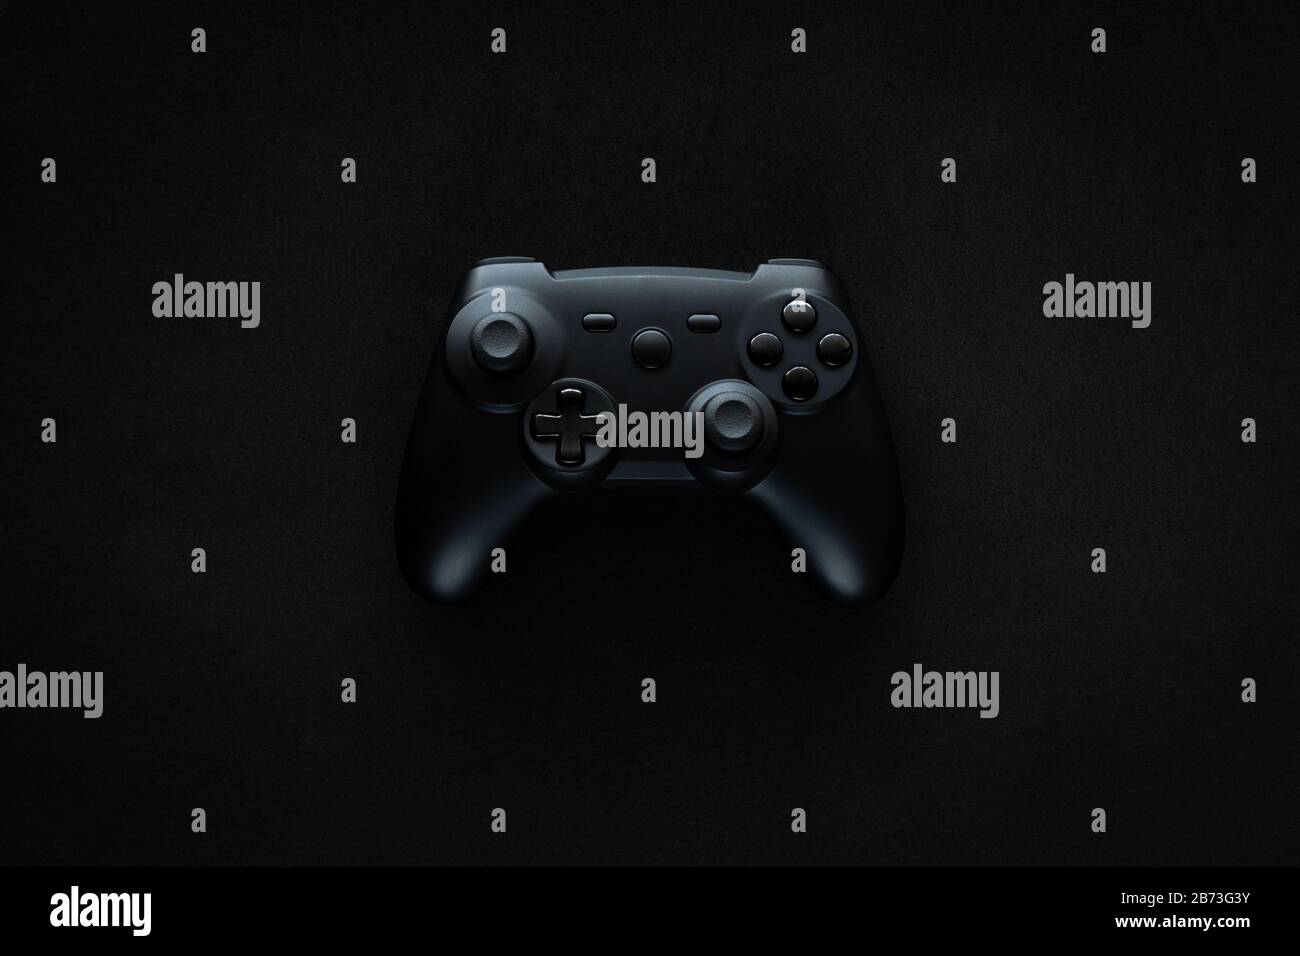 Stock-Foto eines schwarzen Gamepads inmitten eines schwarzen, strukturierten Hintergrunds Stockfoto